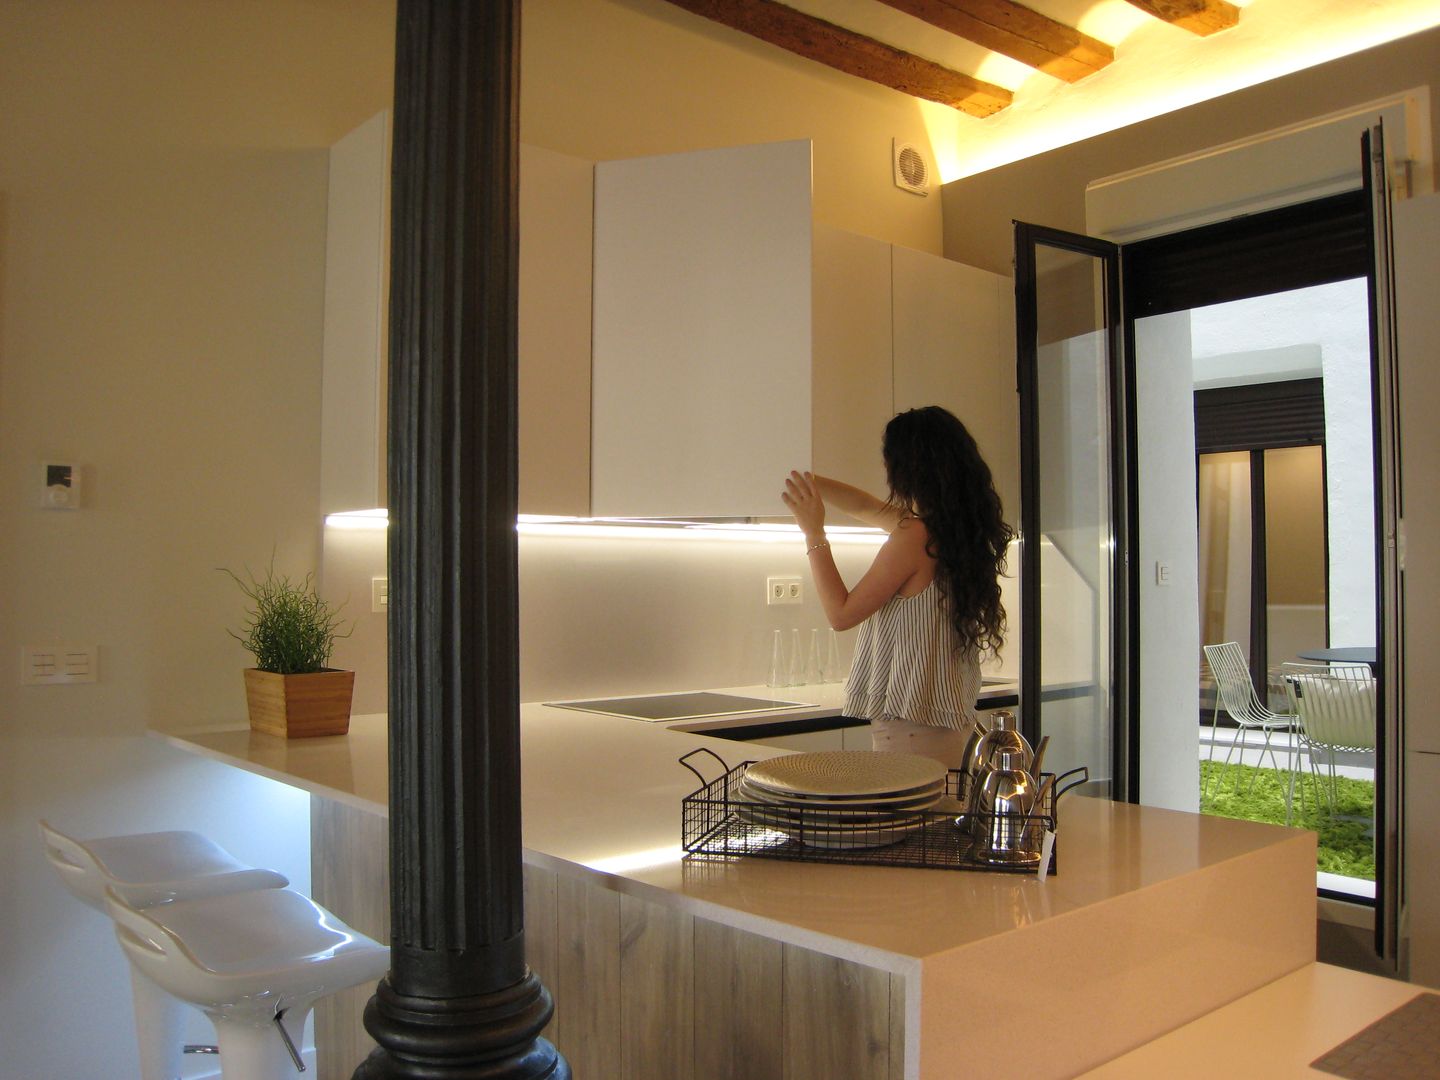 Reforma de vivienda en el Centro de Pamplona, Rooms de Cocinobra Rooms de Cocinobra Kitchen